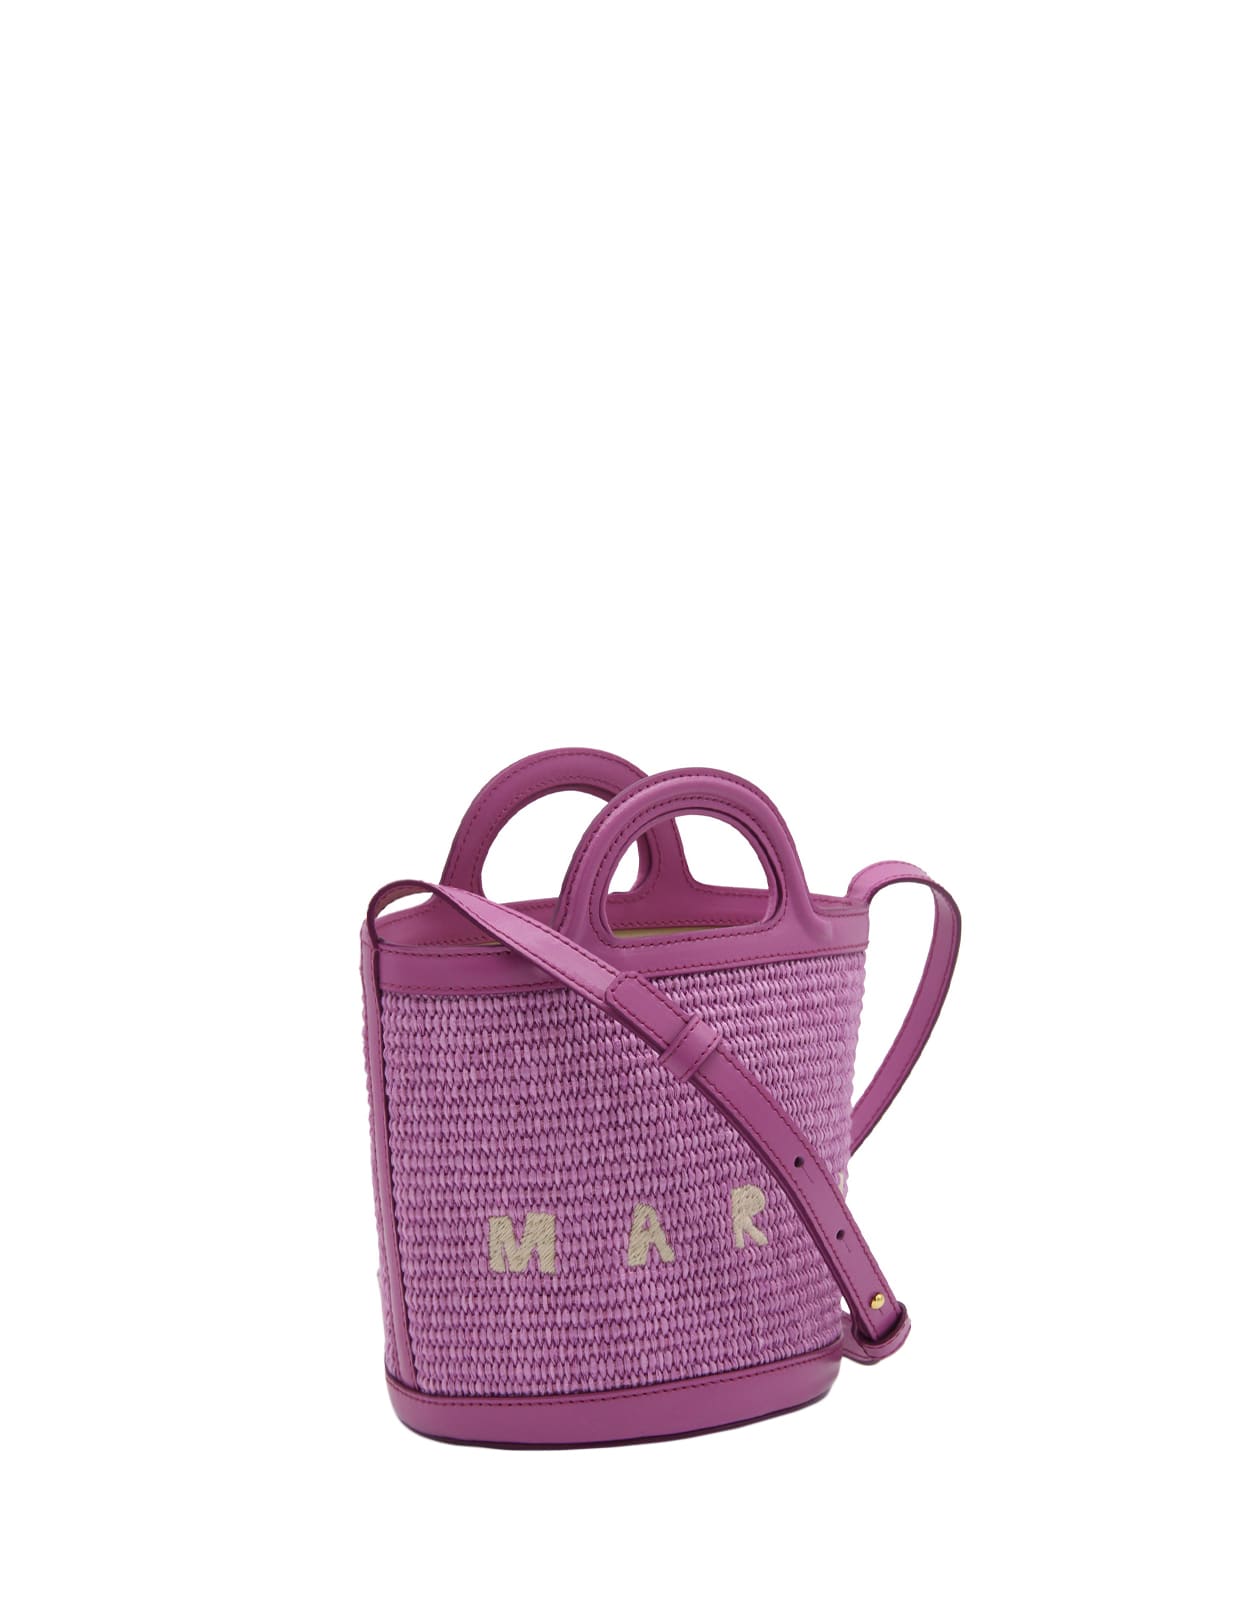 Marni Magenta Tropicalia Mini Bag In Leather And Raffia | ModeSens